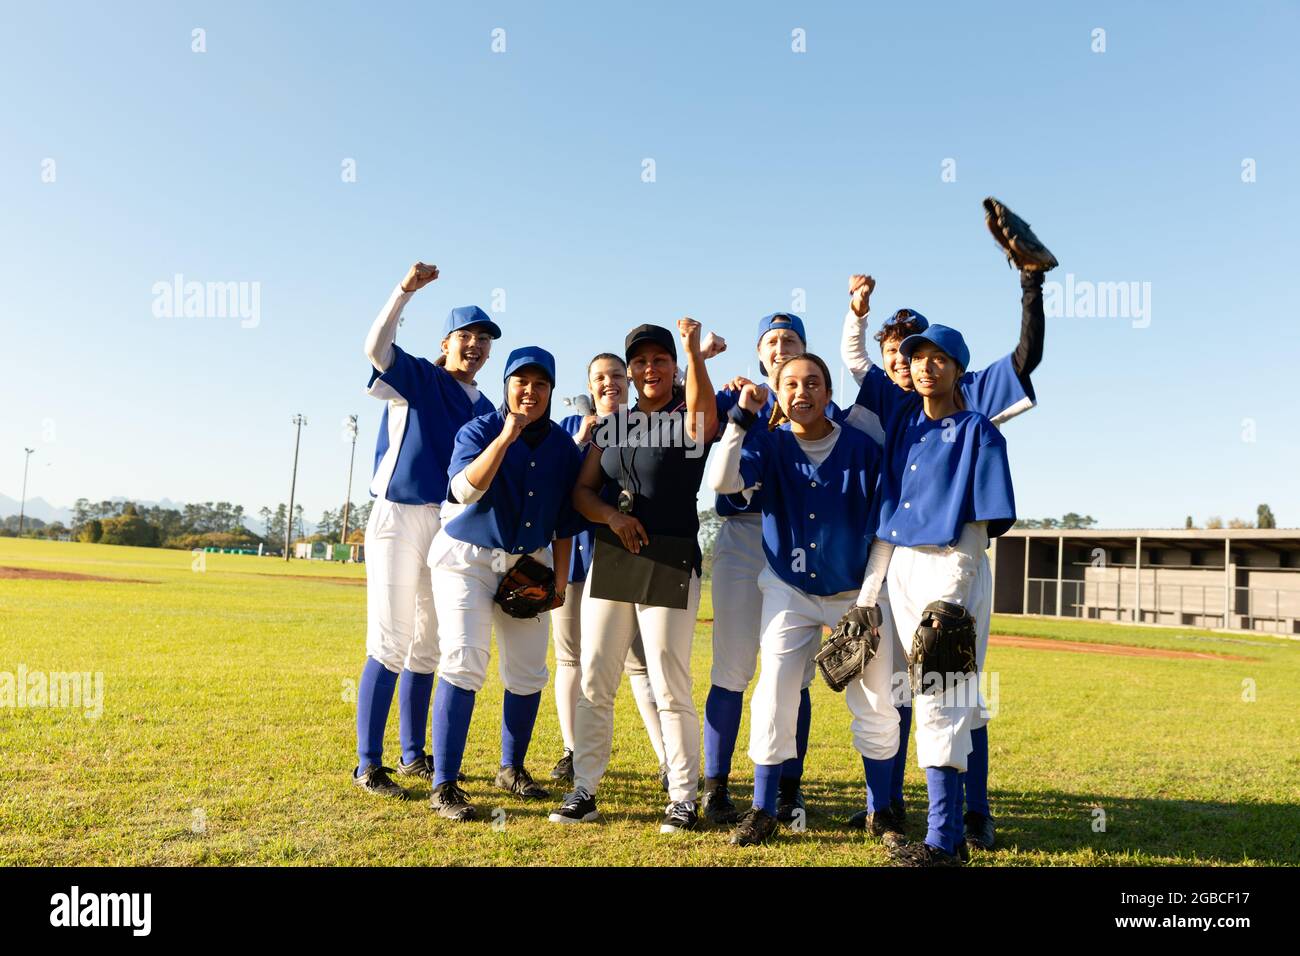 Portrait d'un groupe diversifié de joueuses de baseball et d'un entraîneur debout et applaudisant sur un terrain ensoleillé Banque D'Images